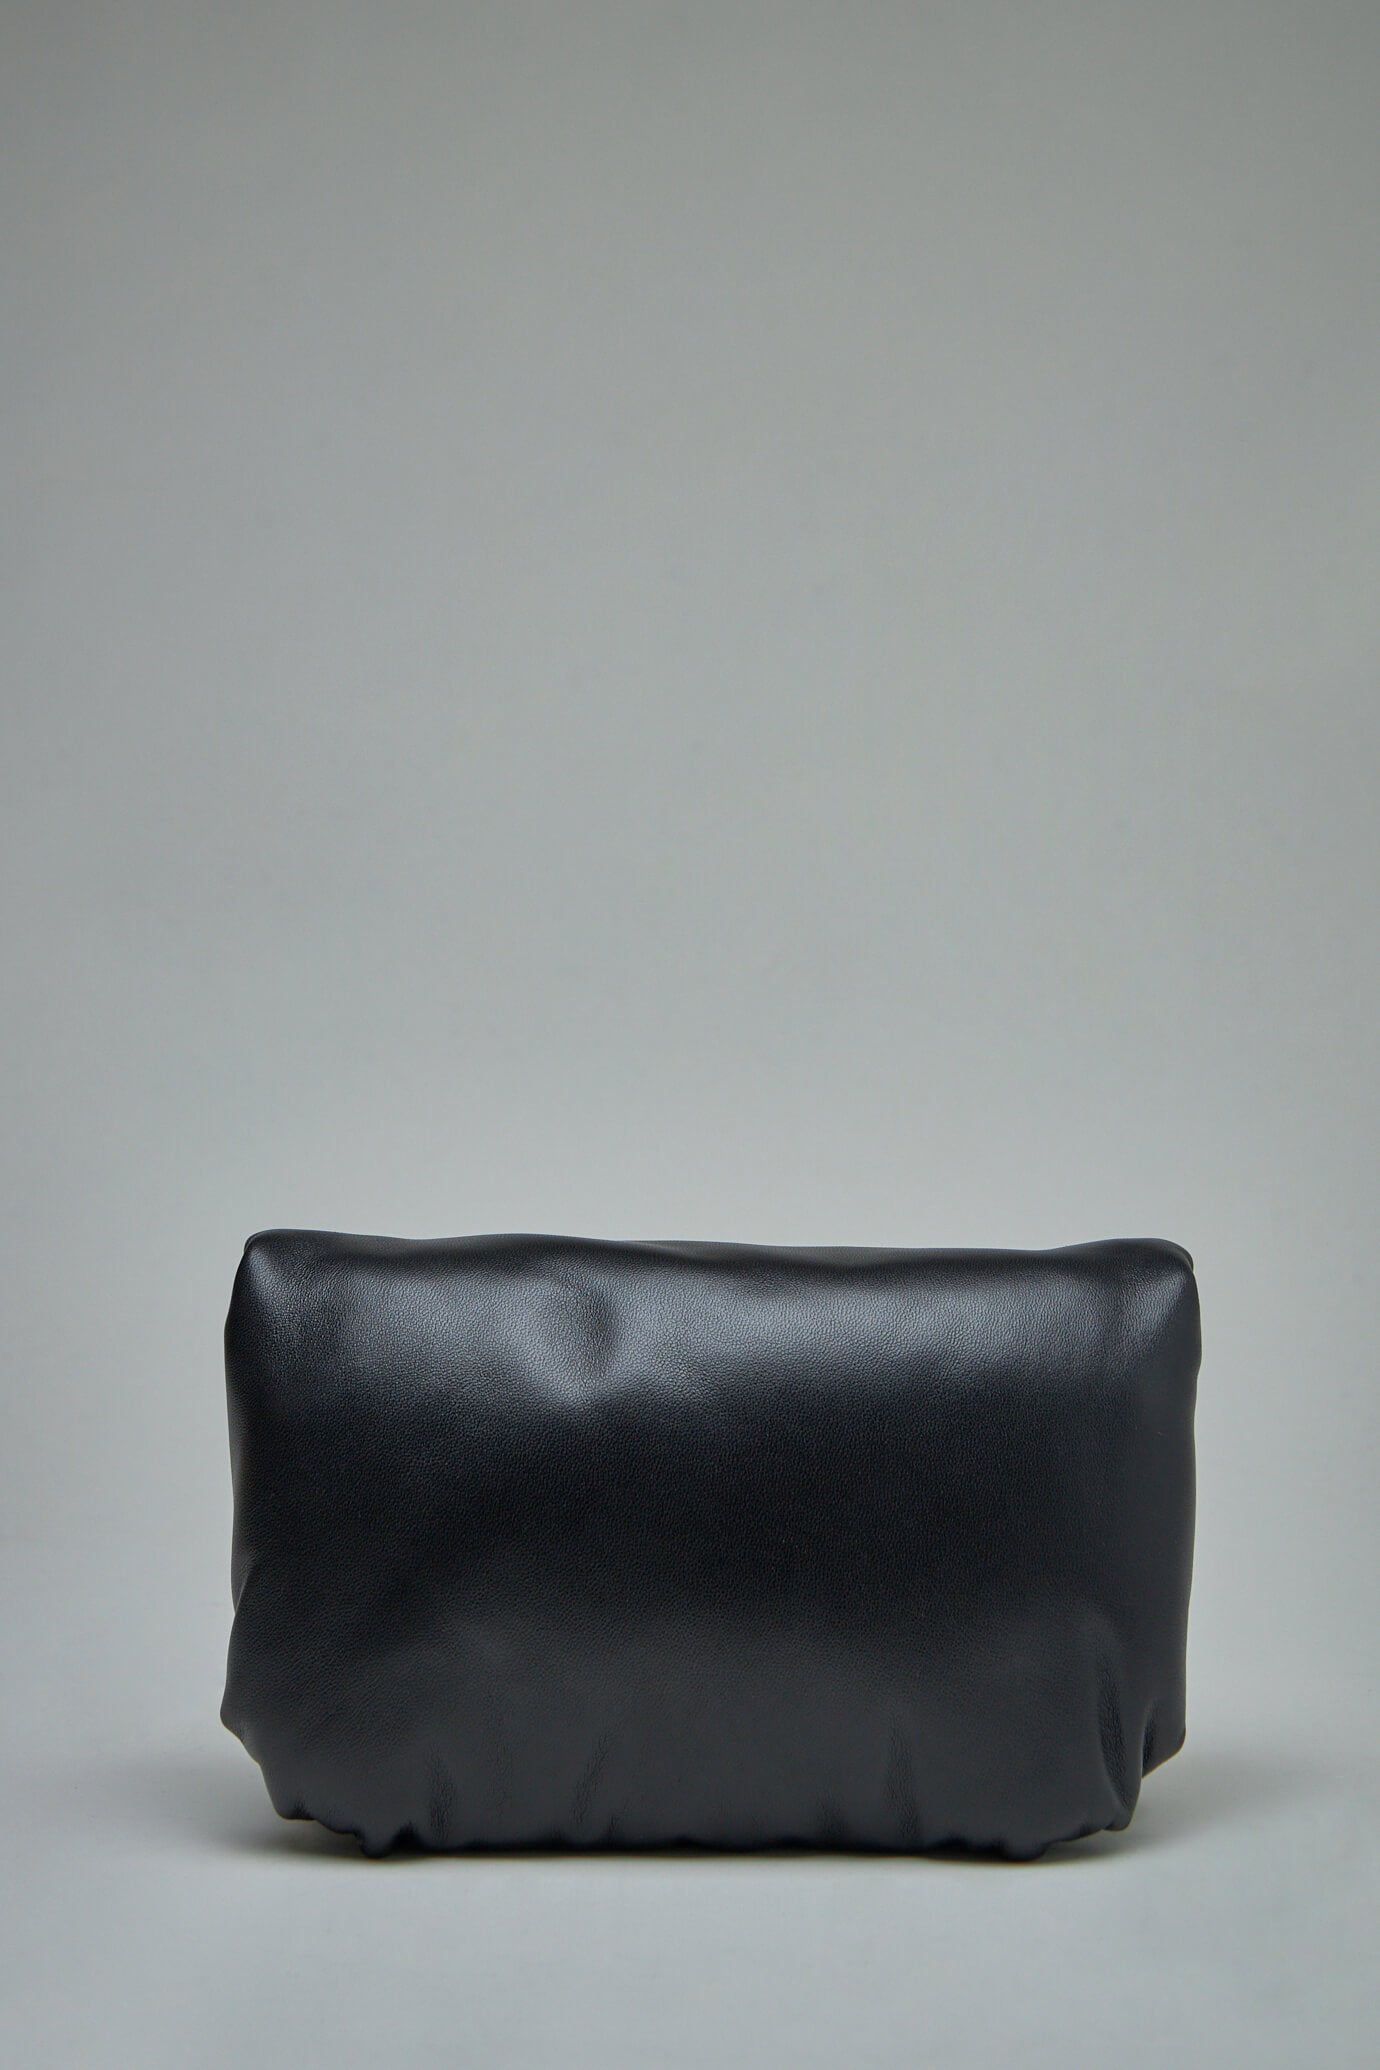 Loewe Goya Puffer Mini Bag in Black